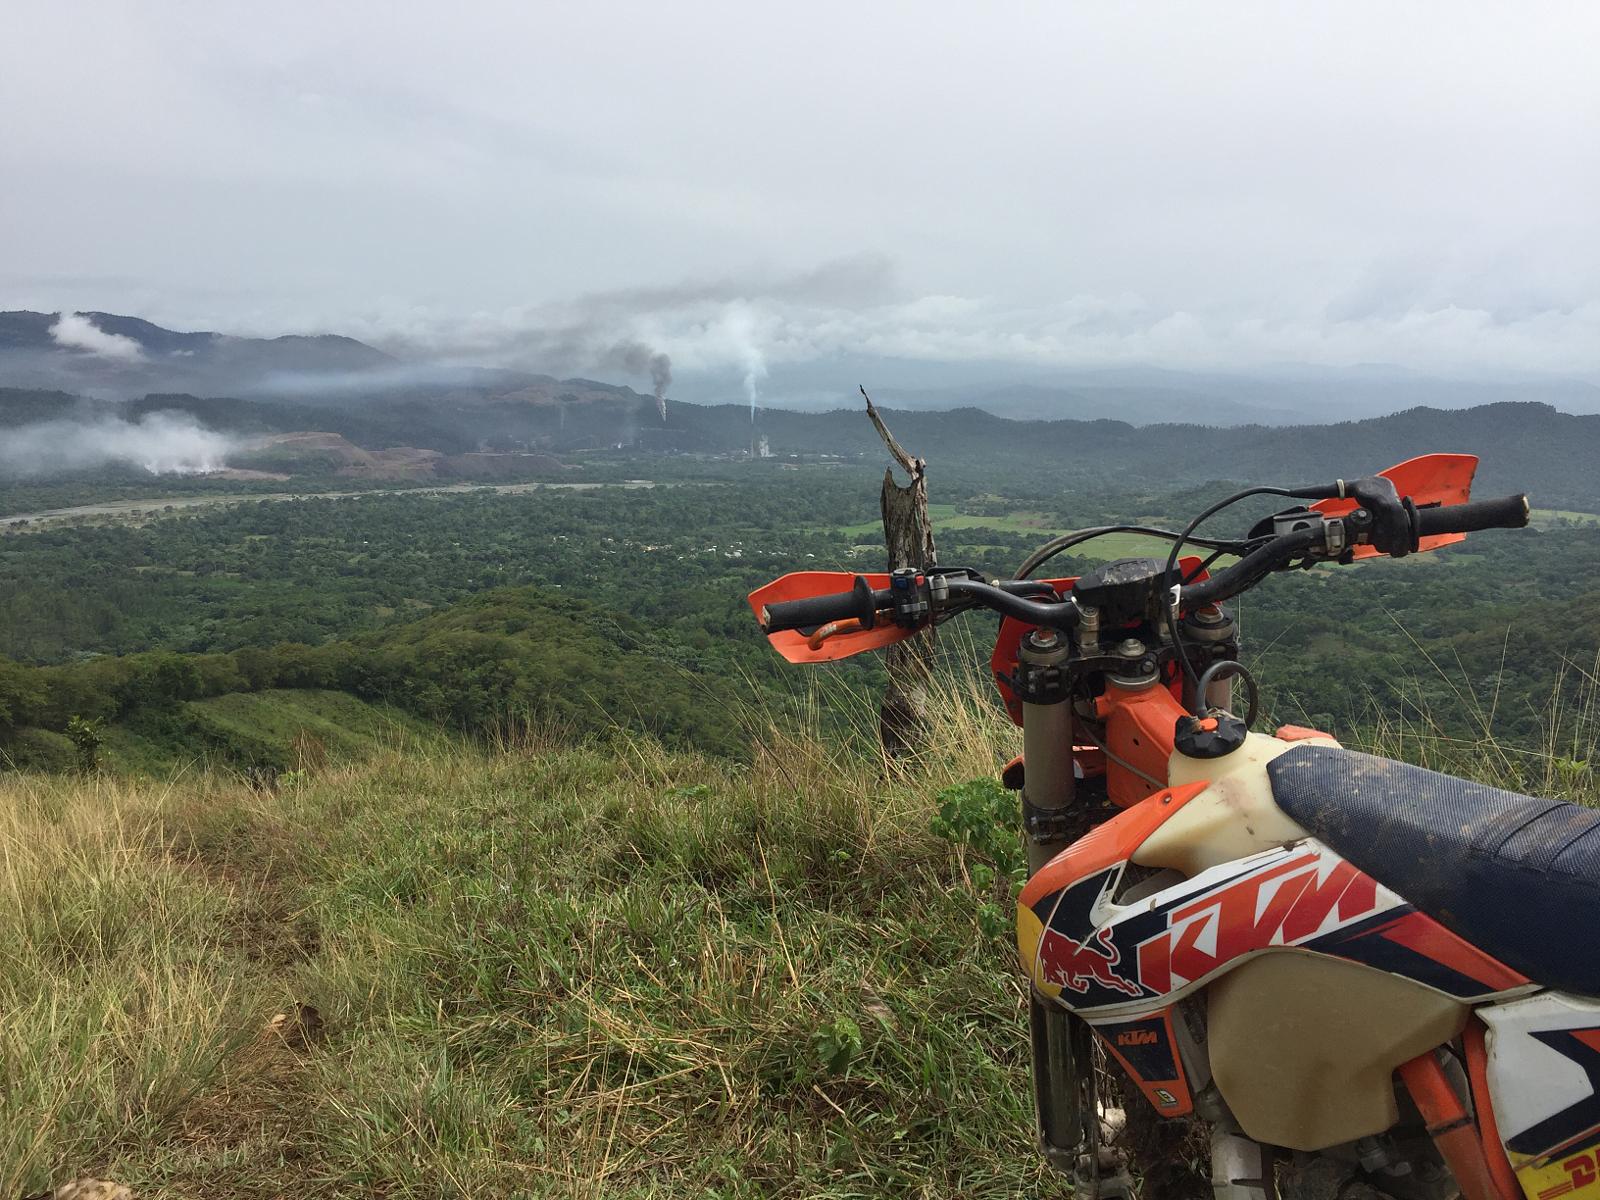 Celebran cuarta versión “Ruta Cimarrón 2019” para promover ecoturismo de Bonao